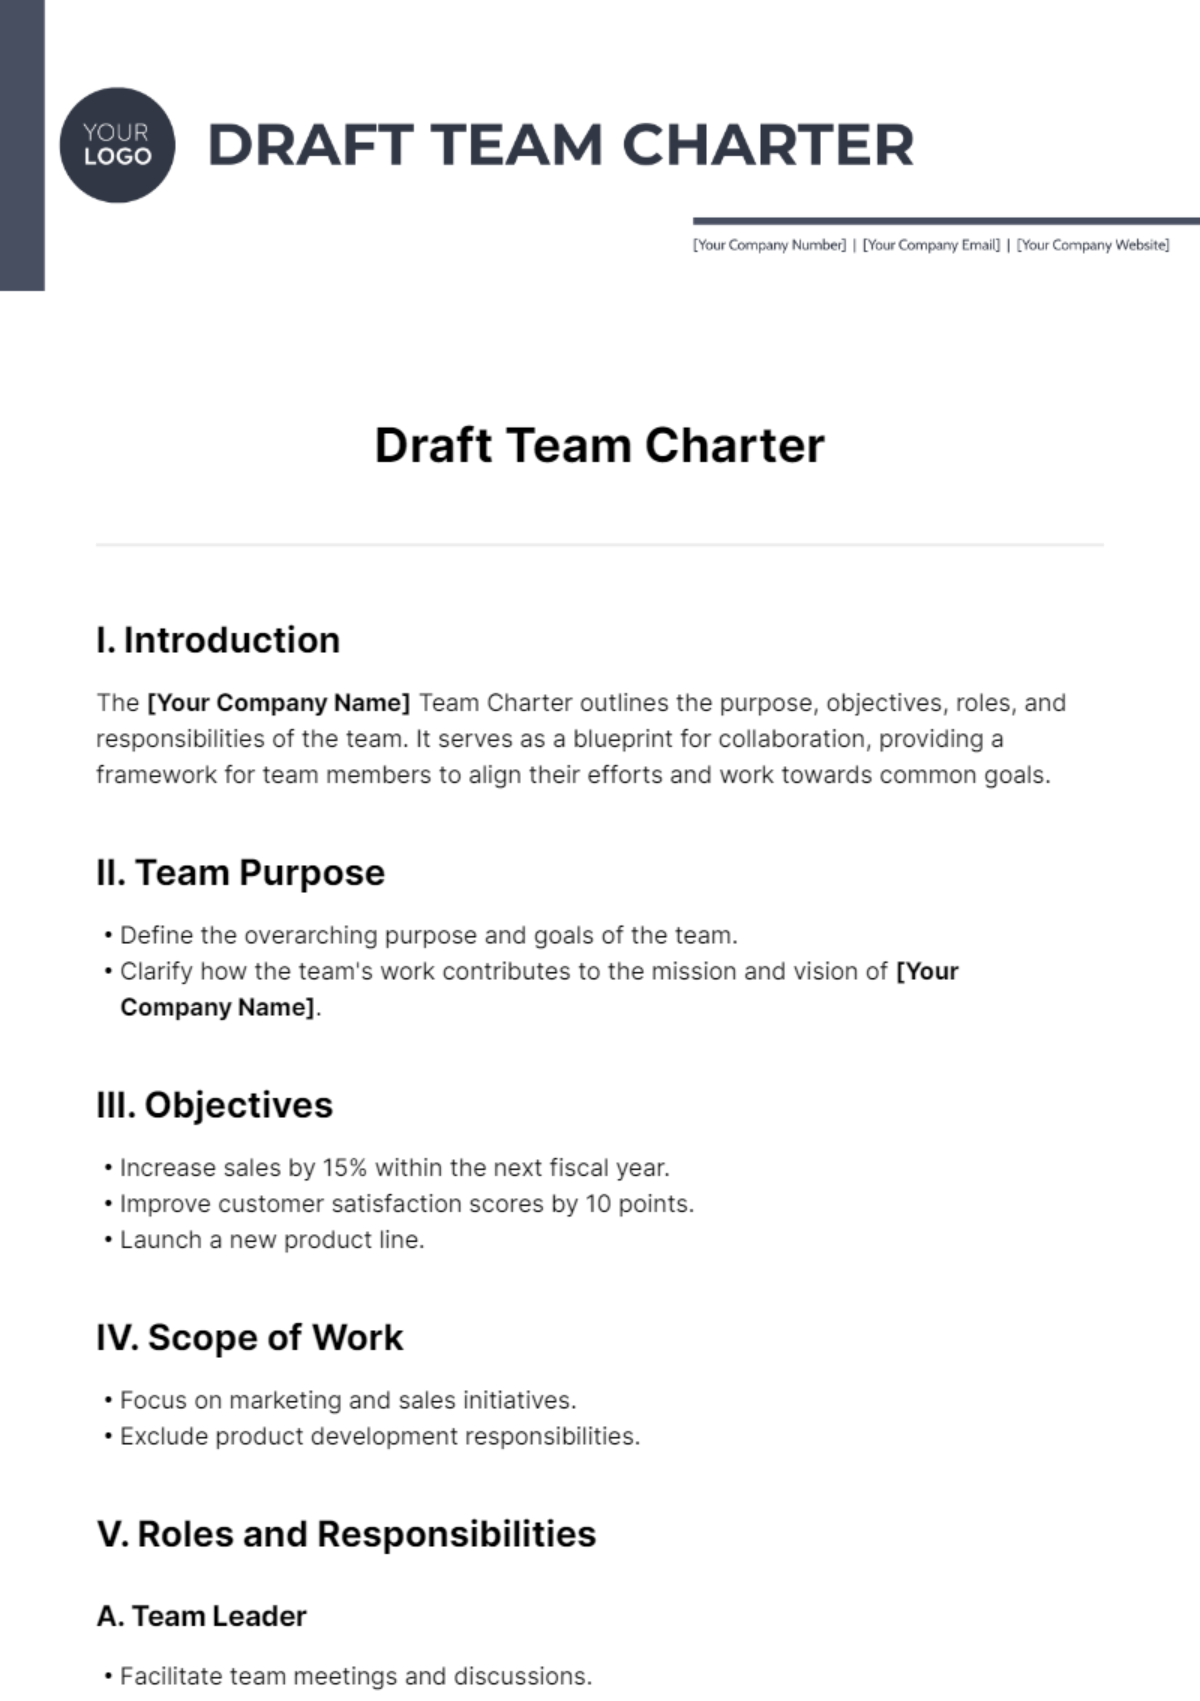 Draft Team Charter Template